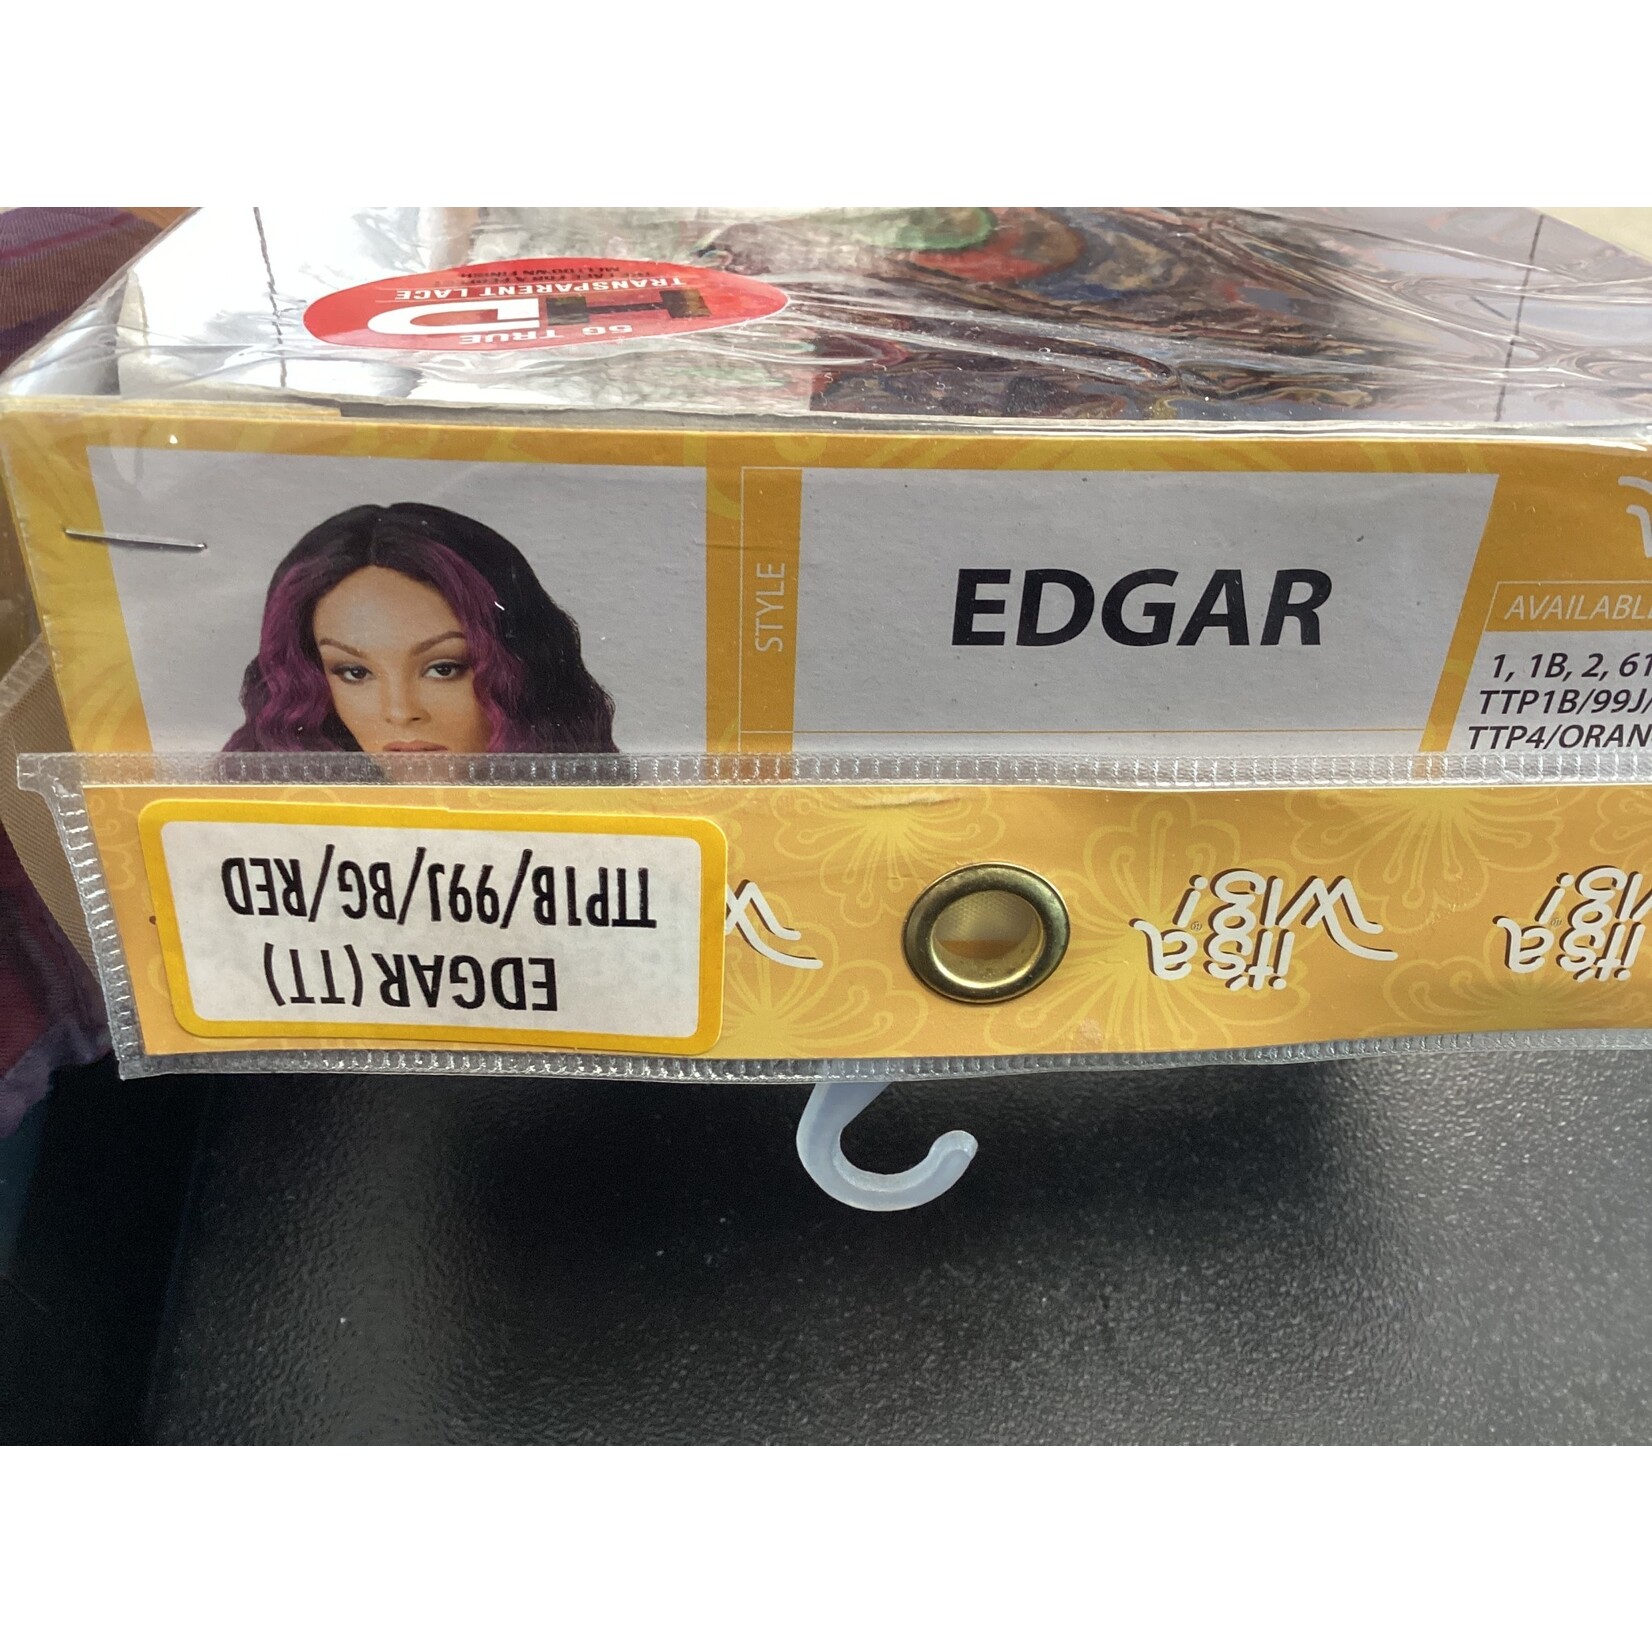 It's a Wig It's a Wig - Edgar